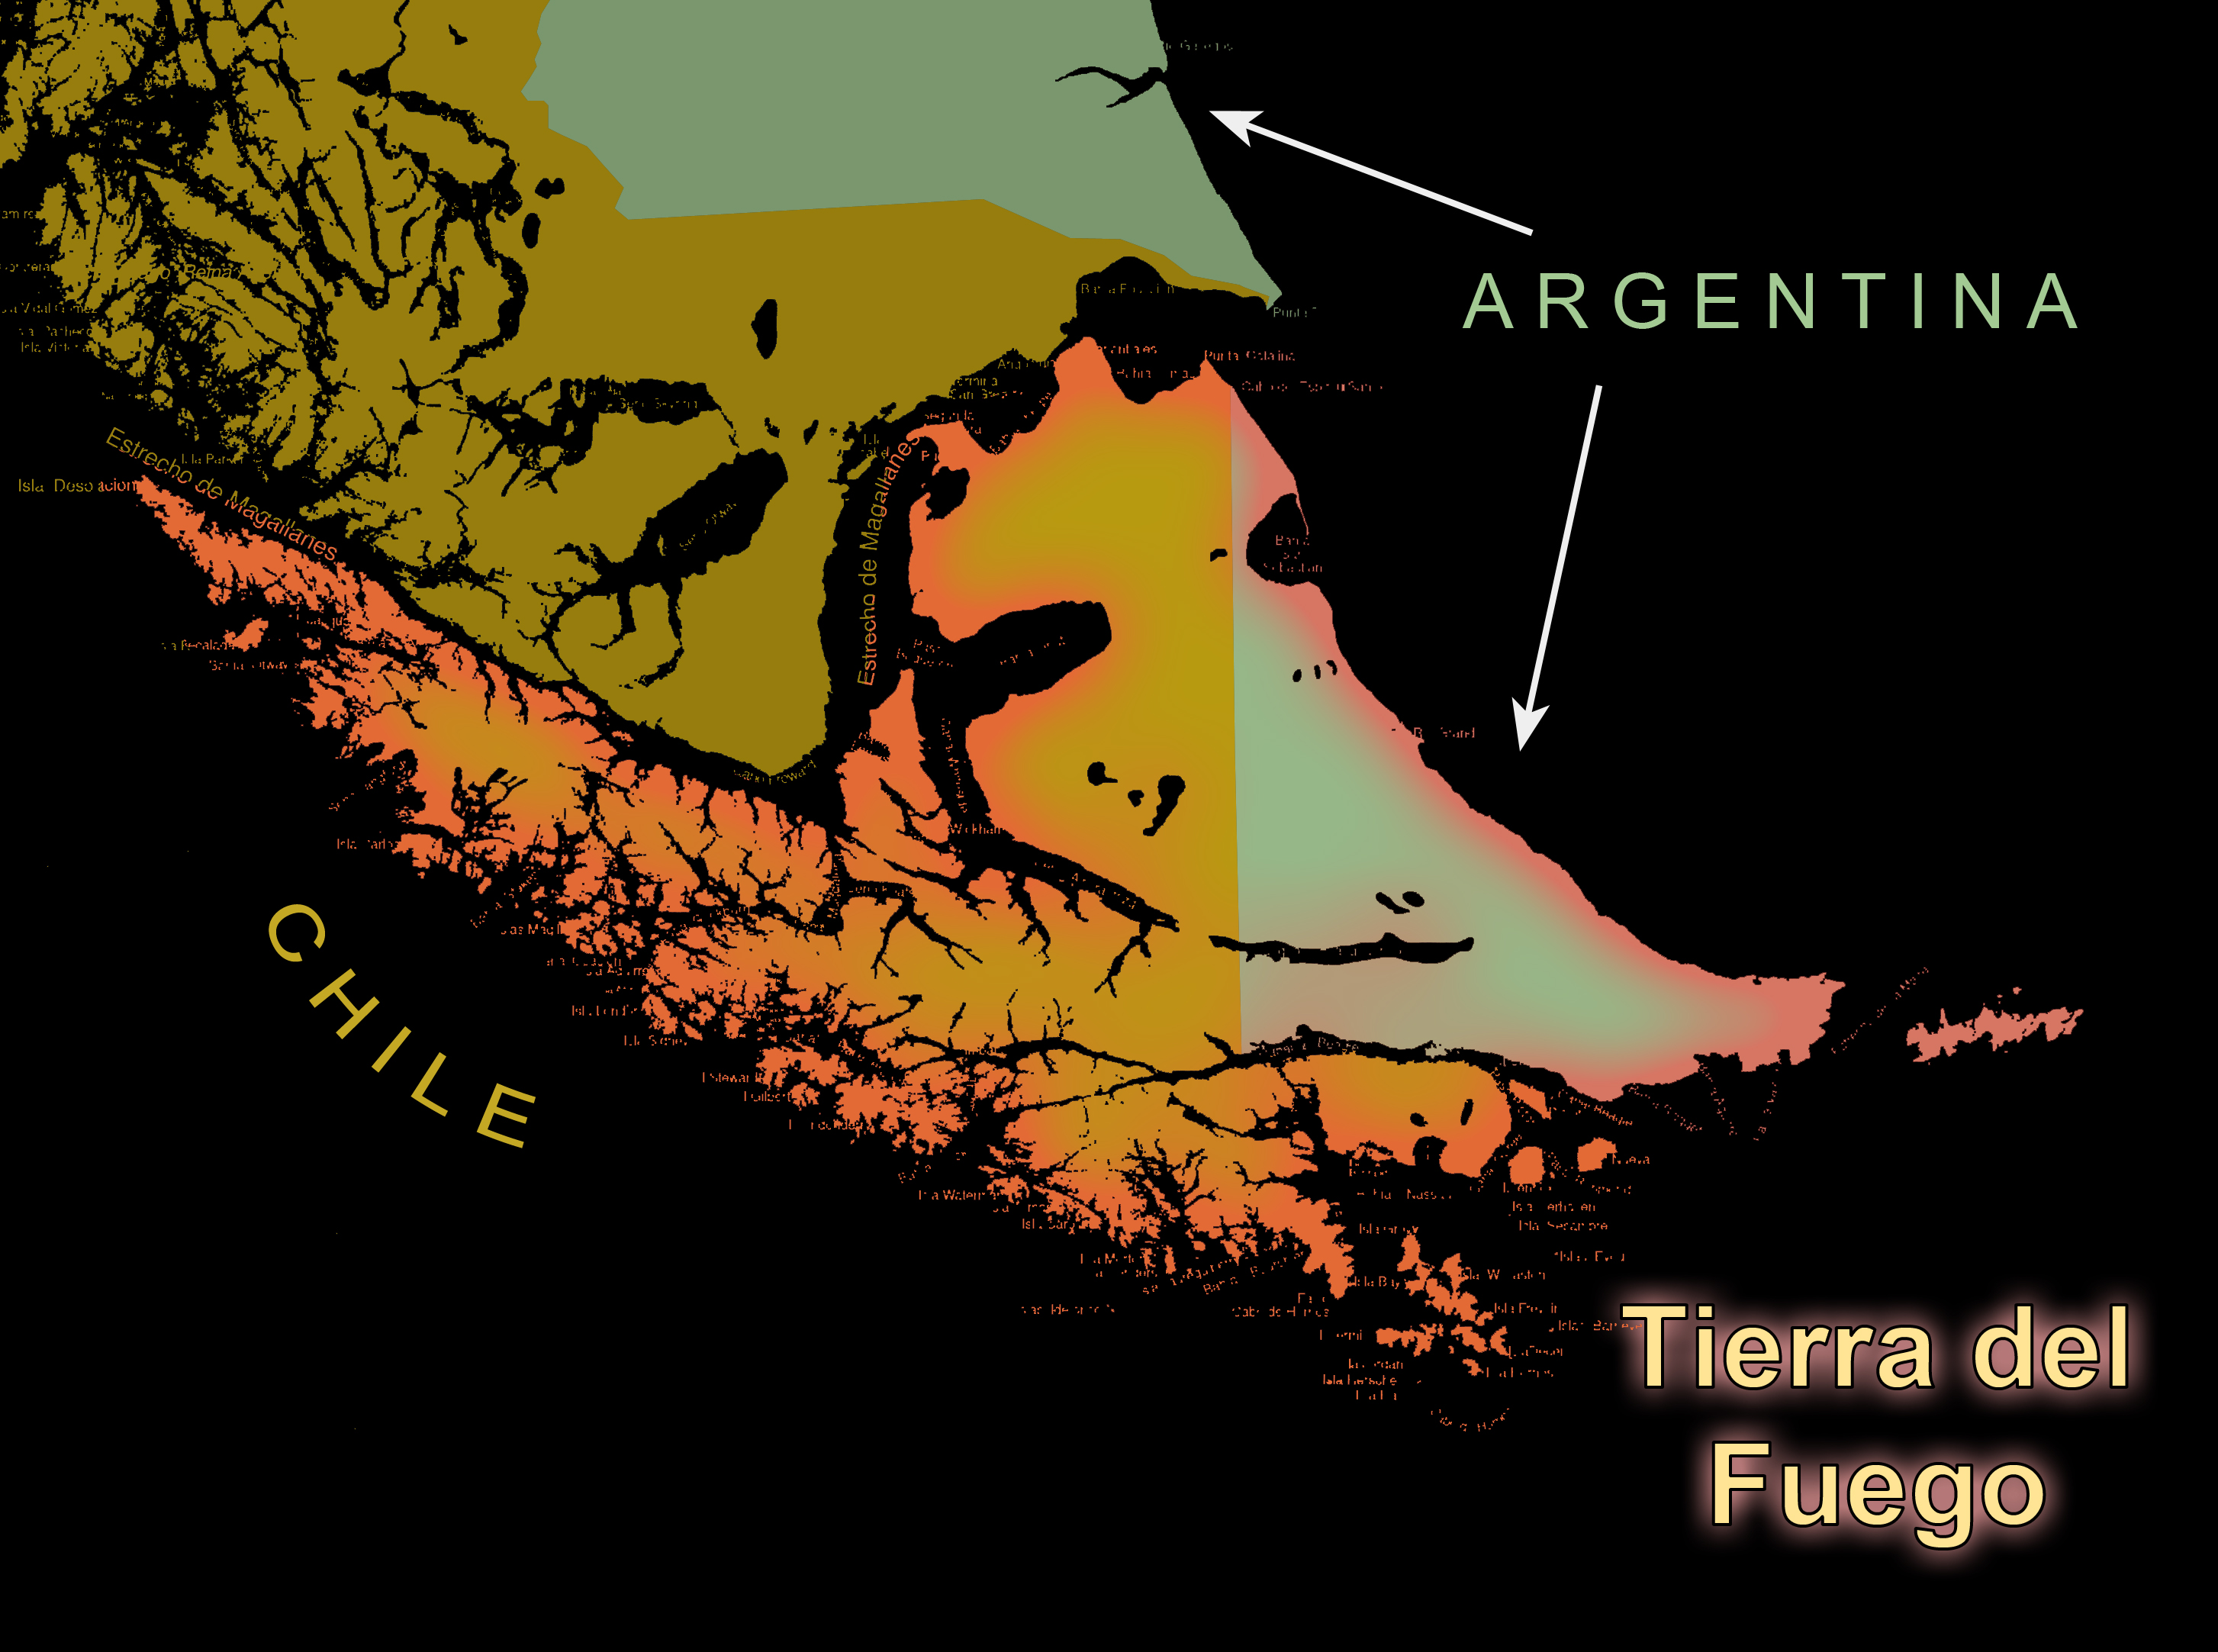 Tierra del Fuego graphic